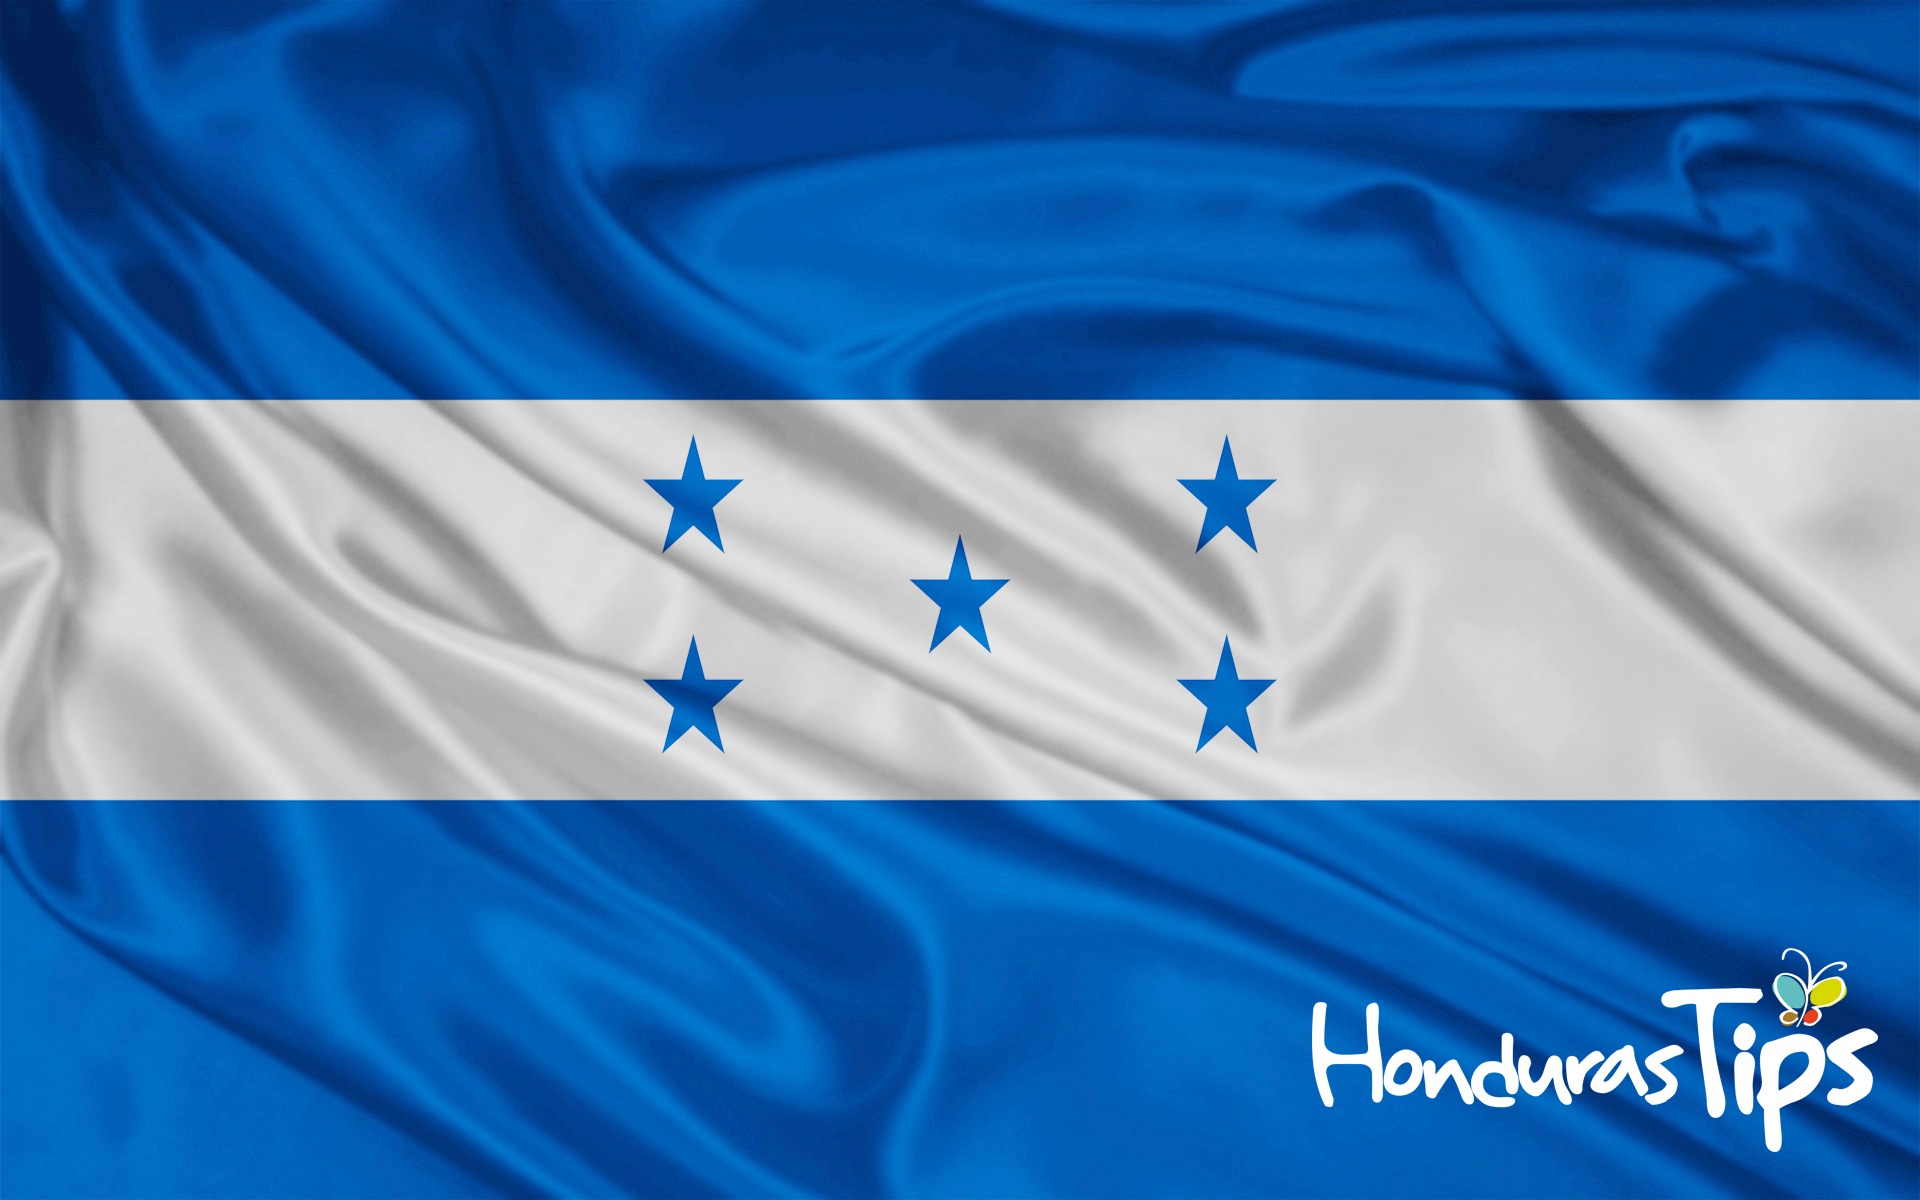 Porque tenemos un país cinco estrellas y nos sentimos orgullosos de Honduras. ¡Feliz Independencia!